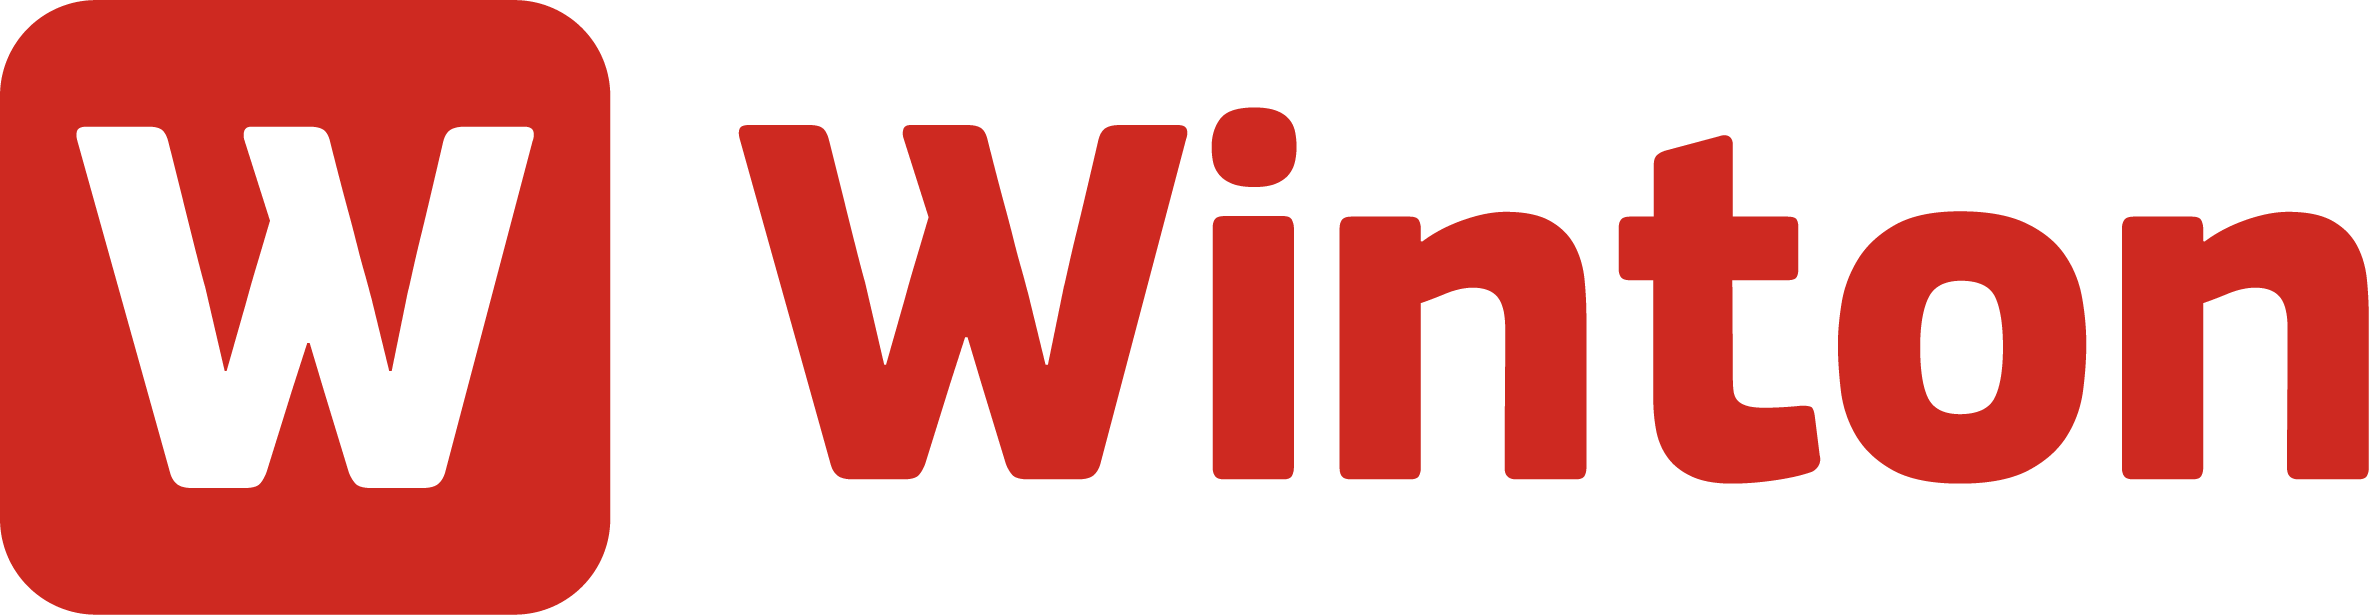 winton tractor attachments logo